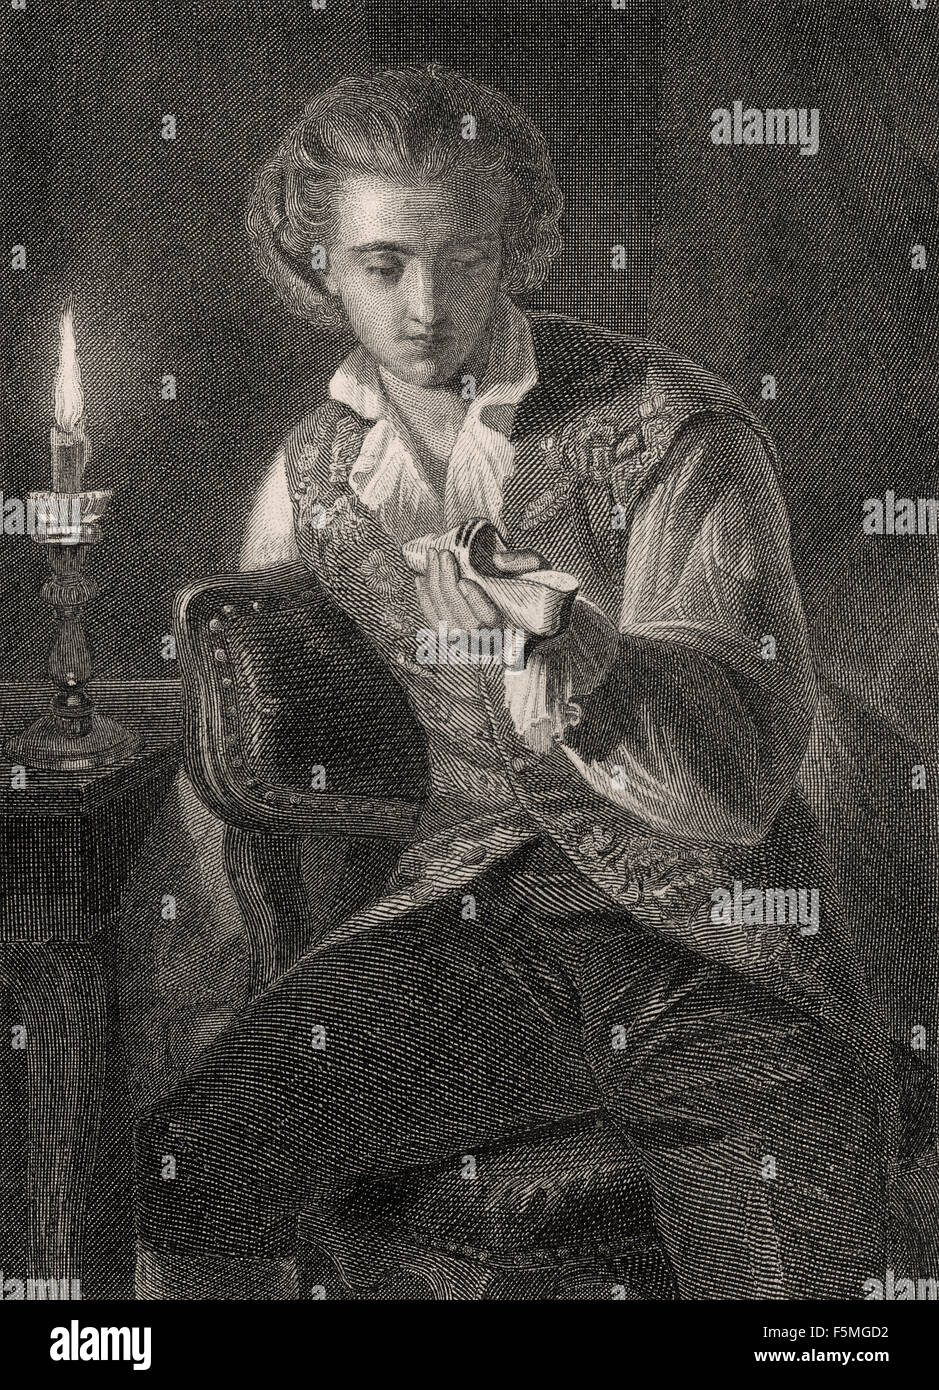 Wilhelm Meister, Szene aus Wilhelm Meisters Lehre, ein Roman von Johann Wolfgang von Goethe Stockfoto